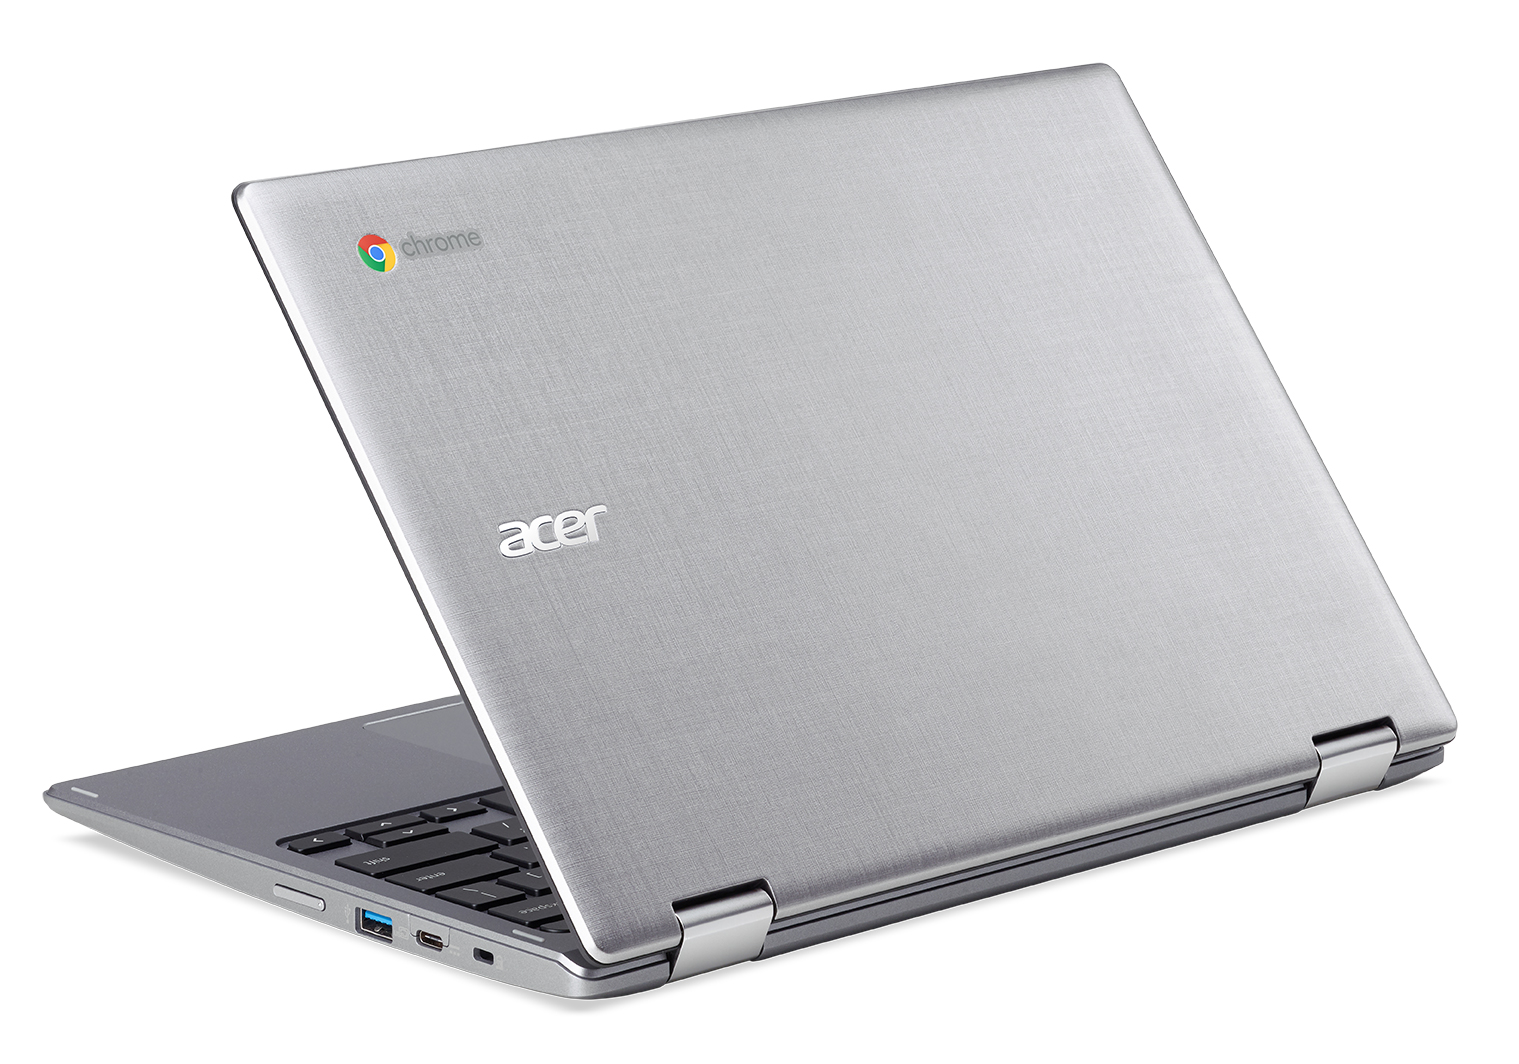 Acer S New Chromebooks Start At 279 Ars Technica